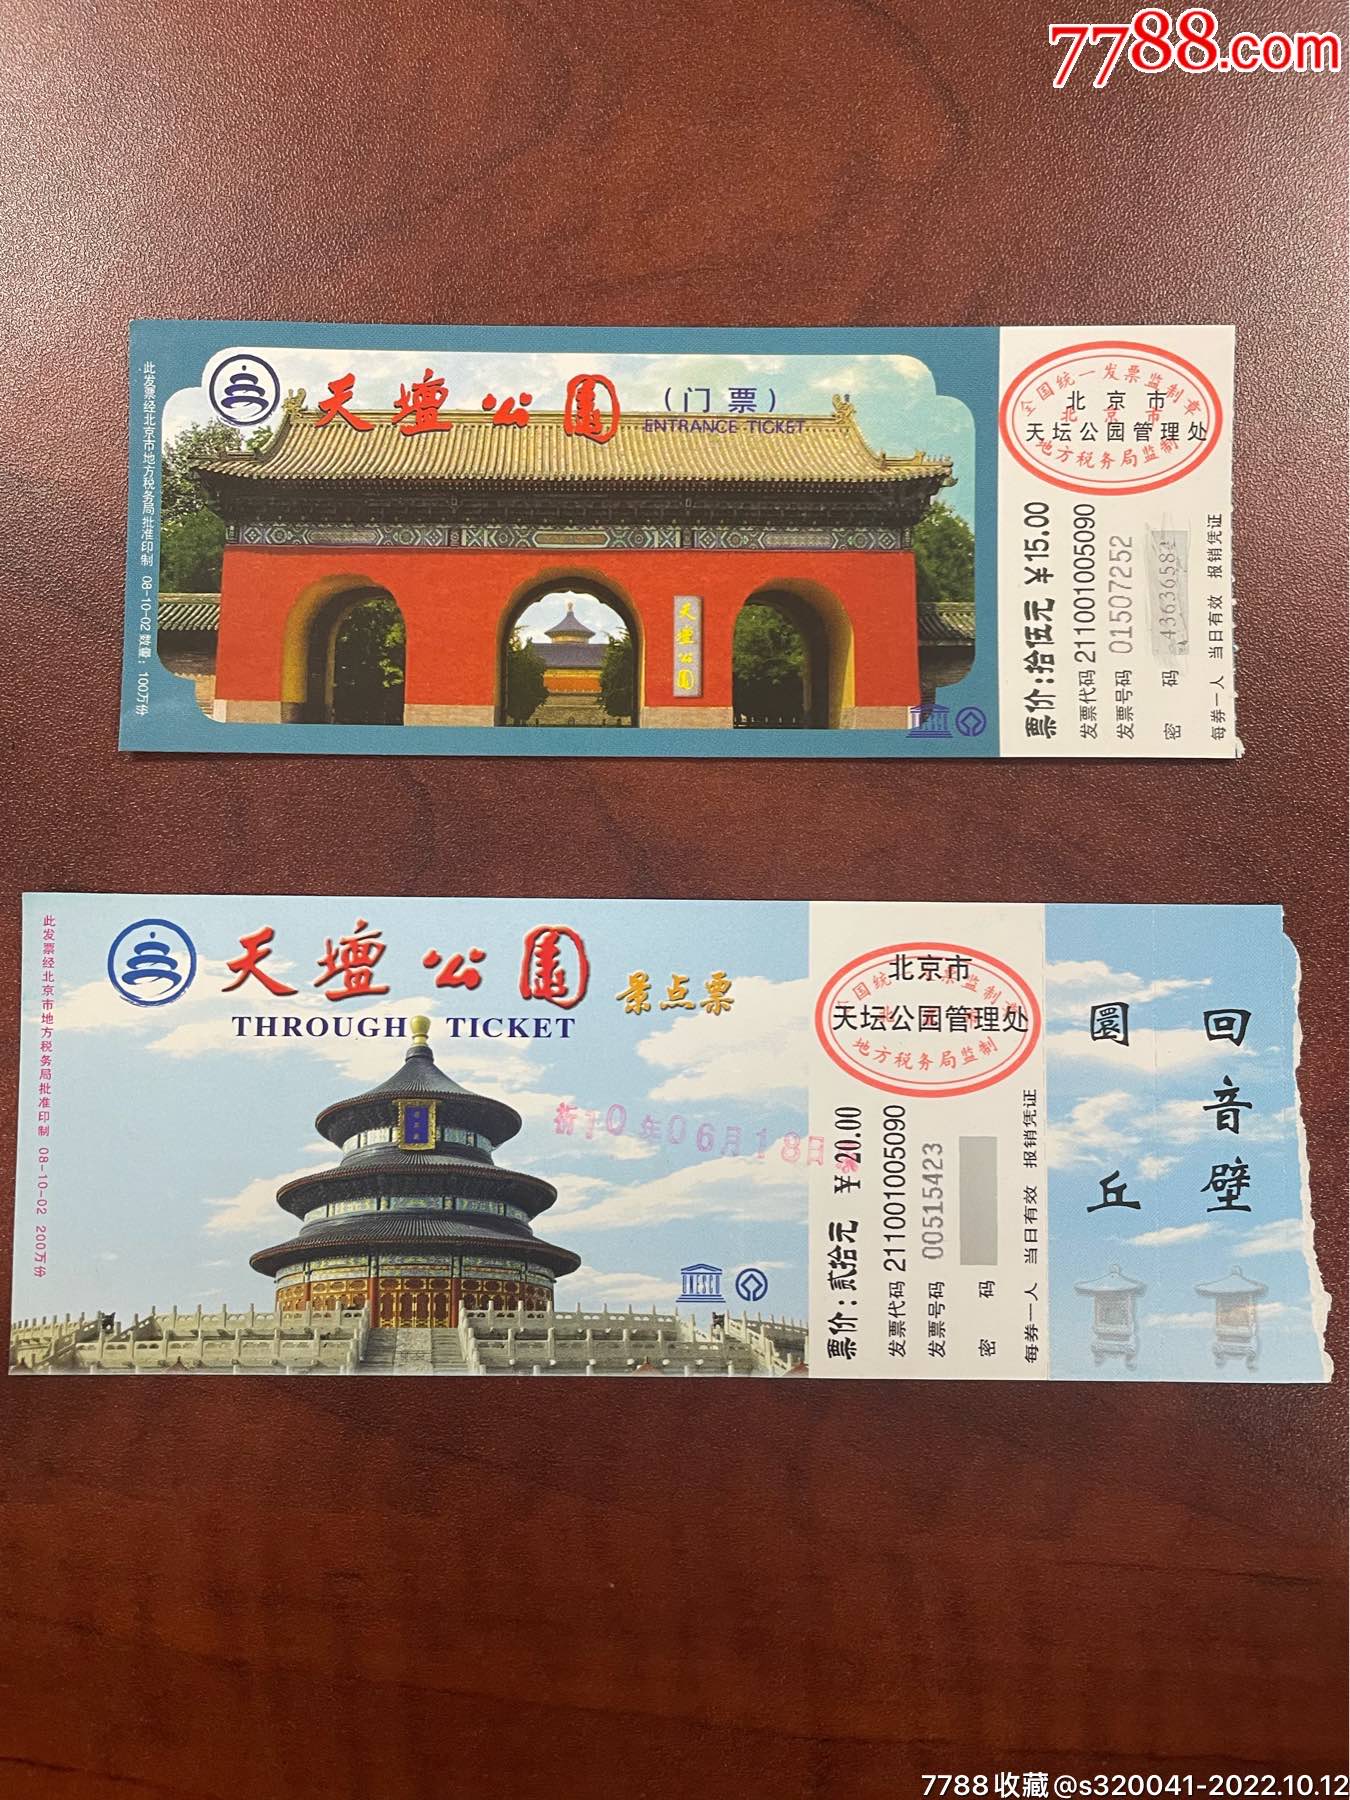 2010年北京天坛公园景点门票